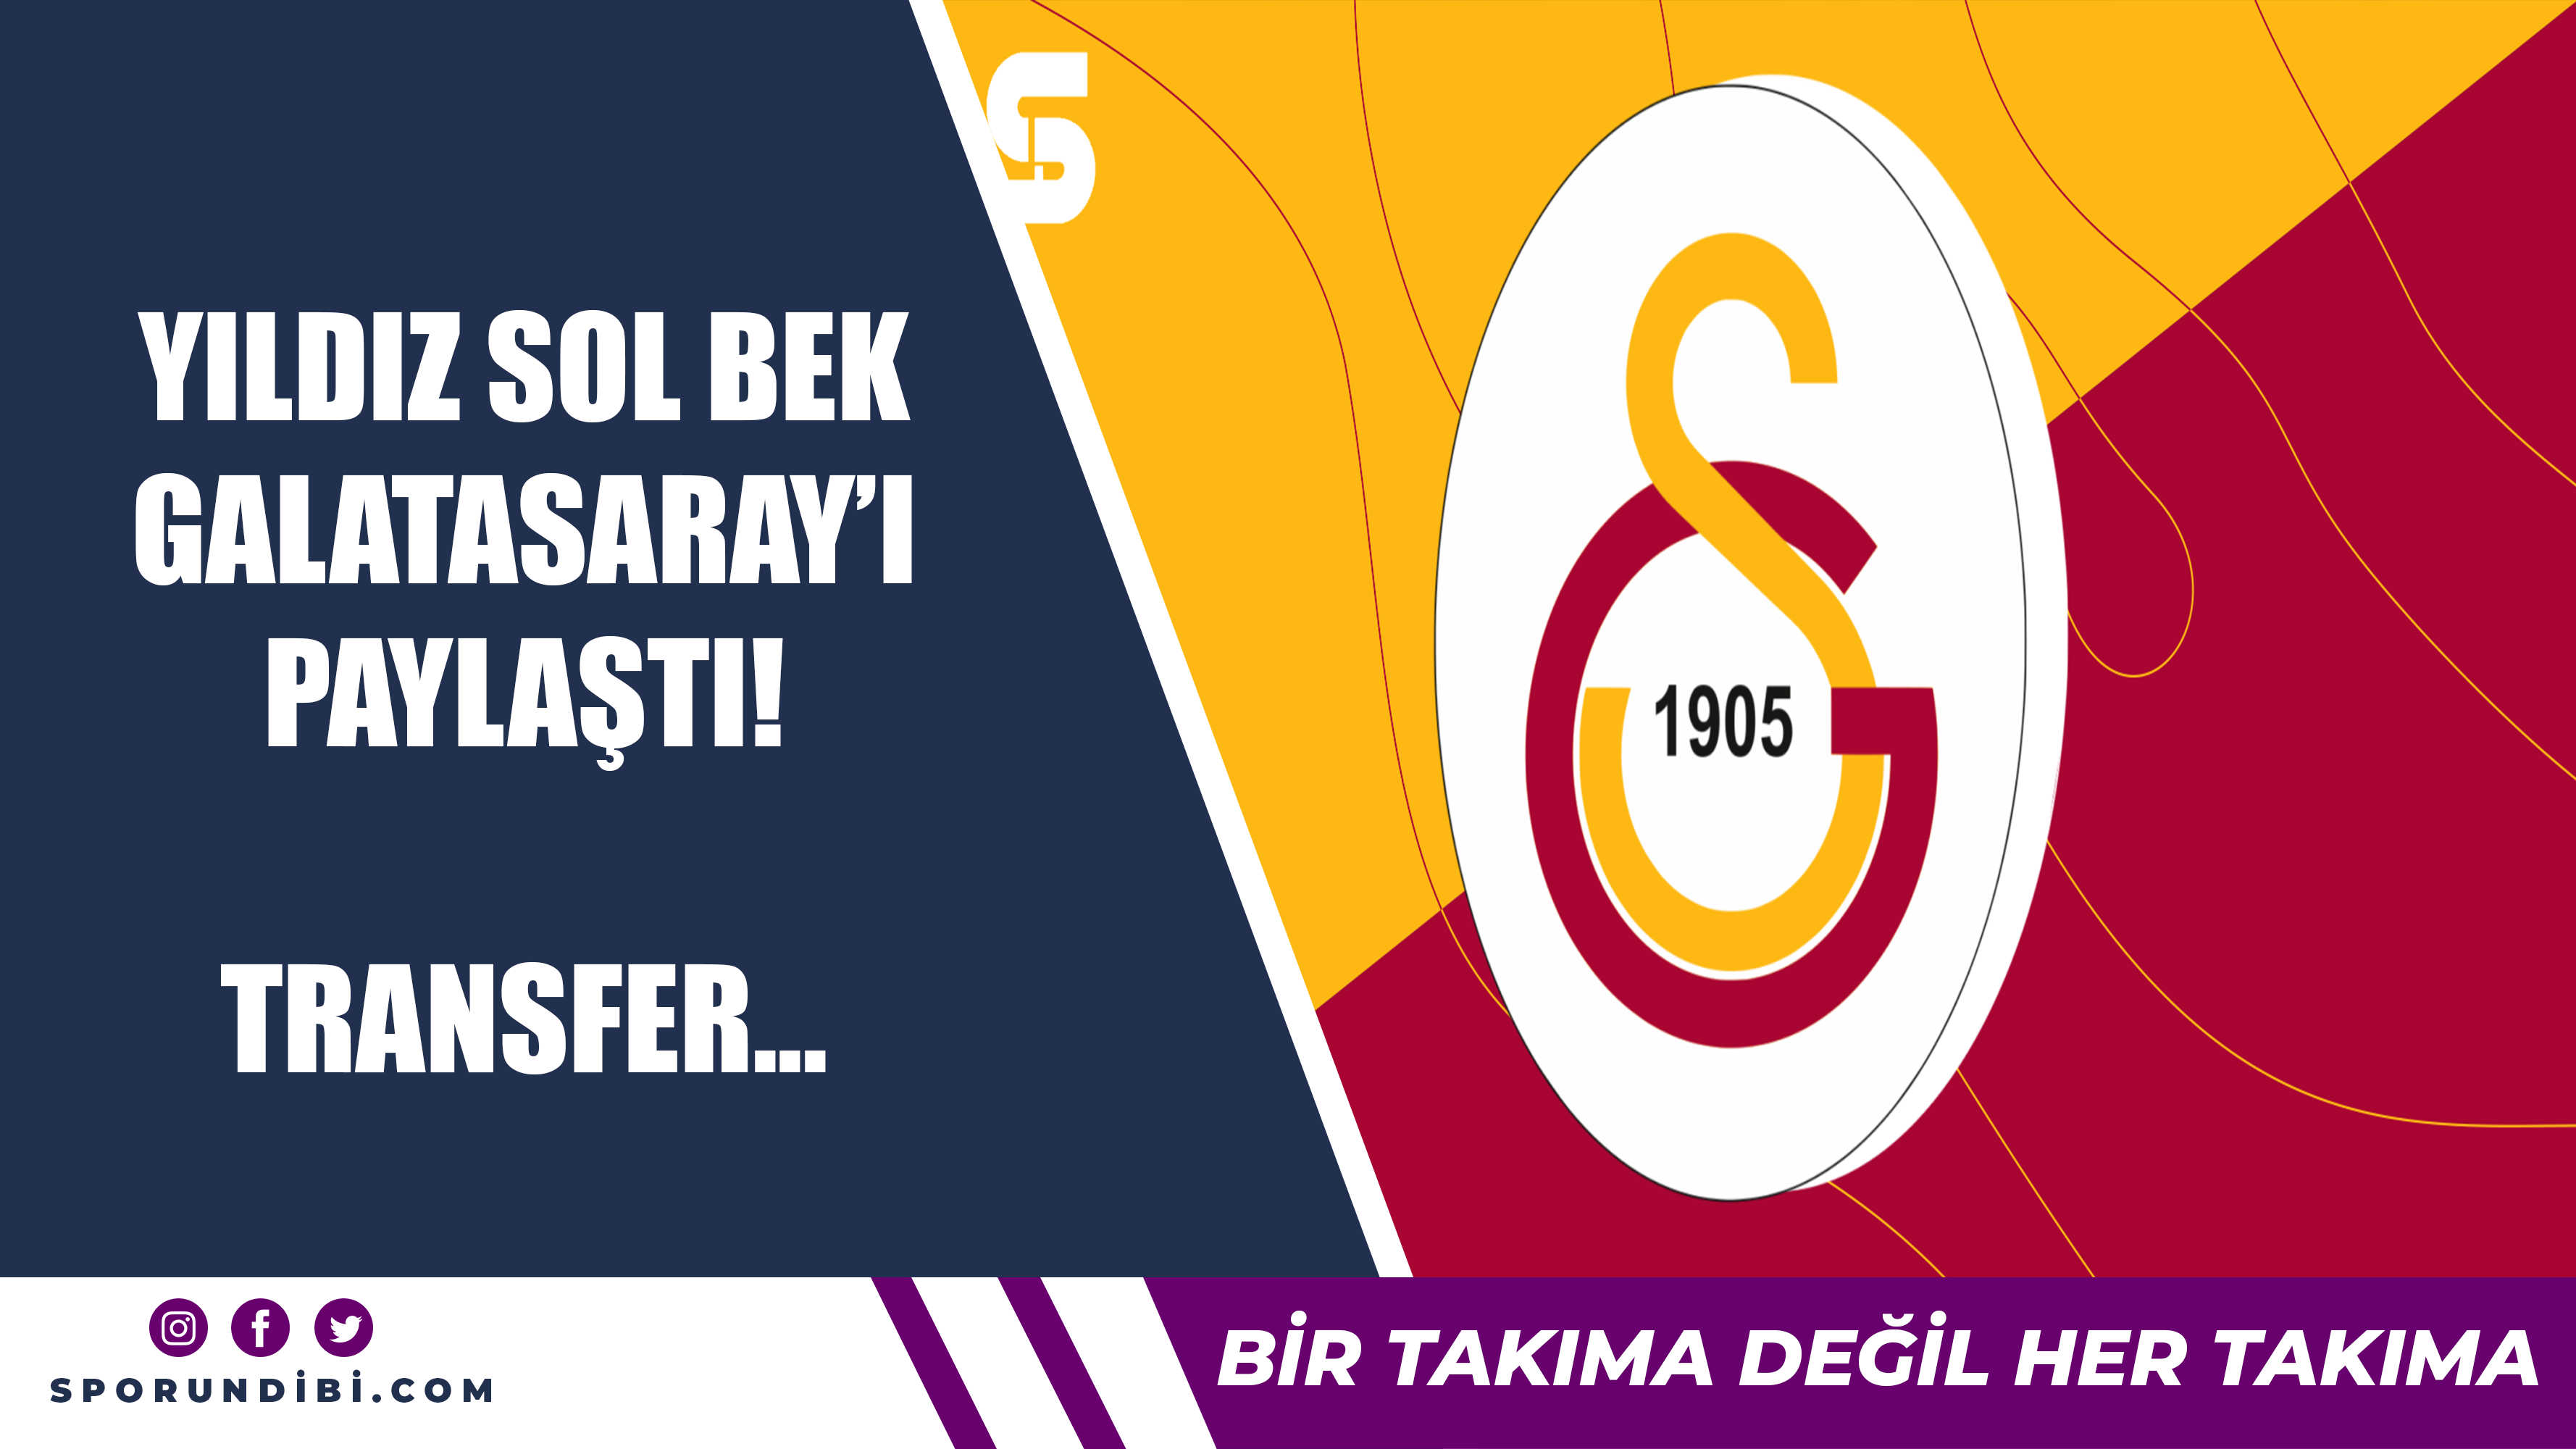 Yıldız sol bek Galatasaray'ı paylaştı! Transfer...